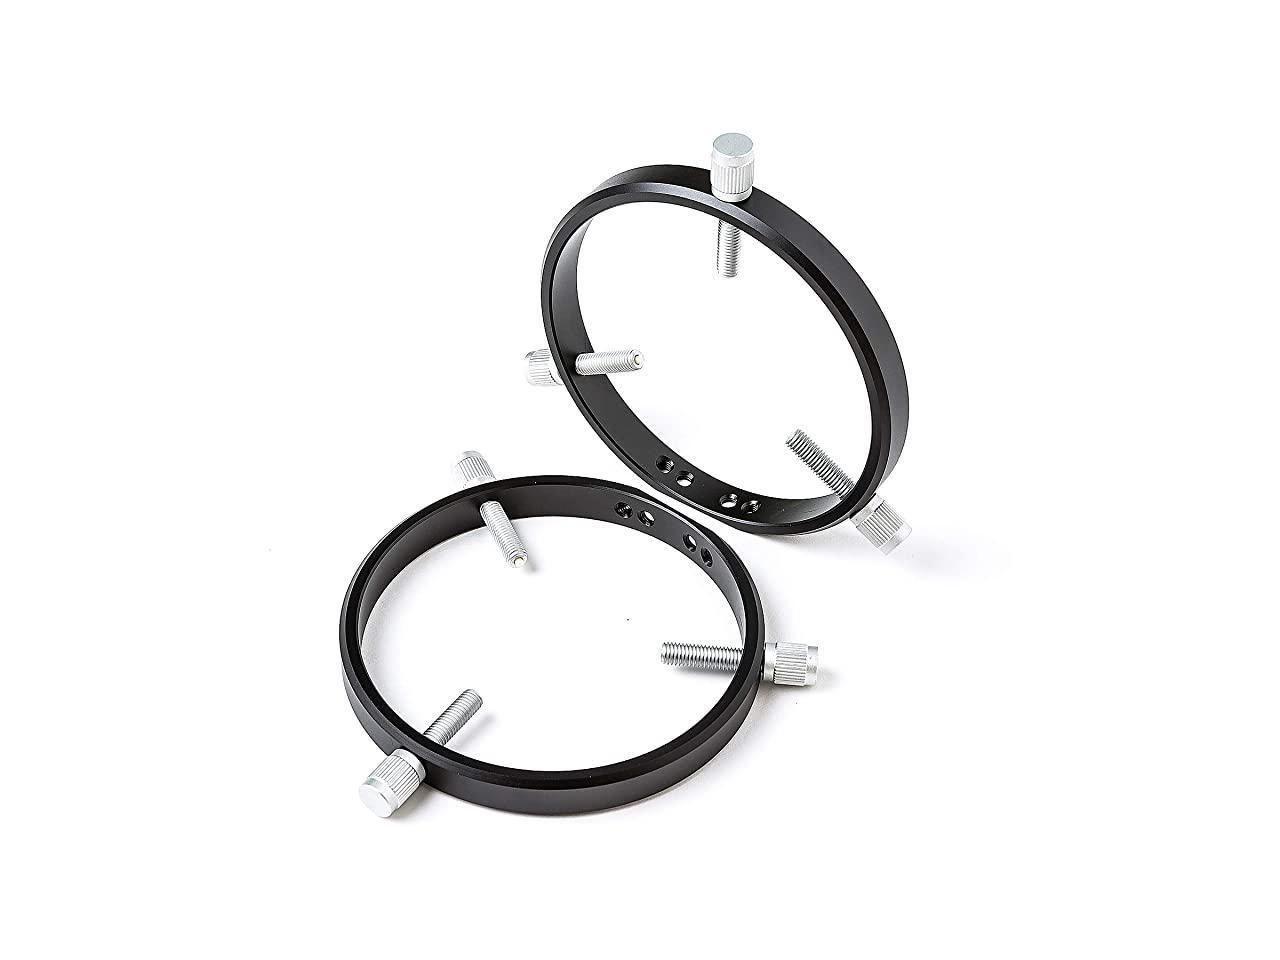 Adjustable Guiding Scope Rings for Telescope Tube Diameter or Finders 76mm Telescope Tube Rings